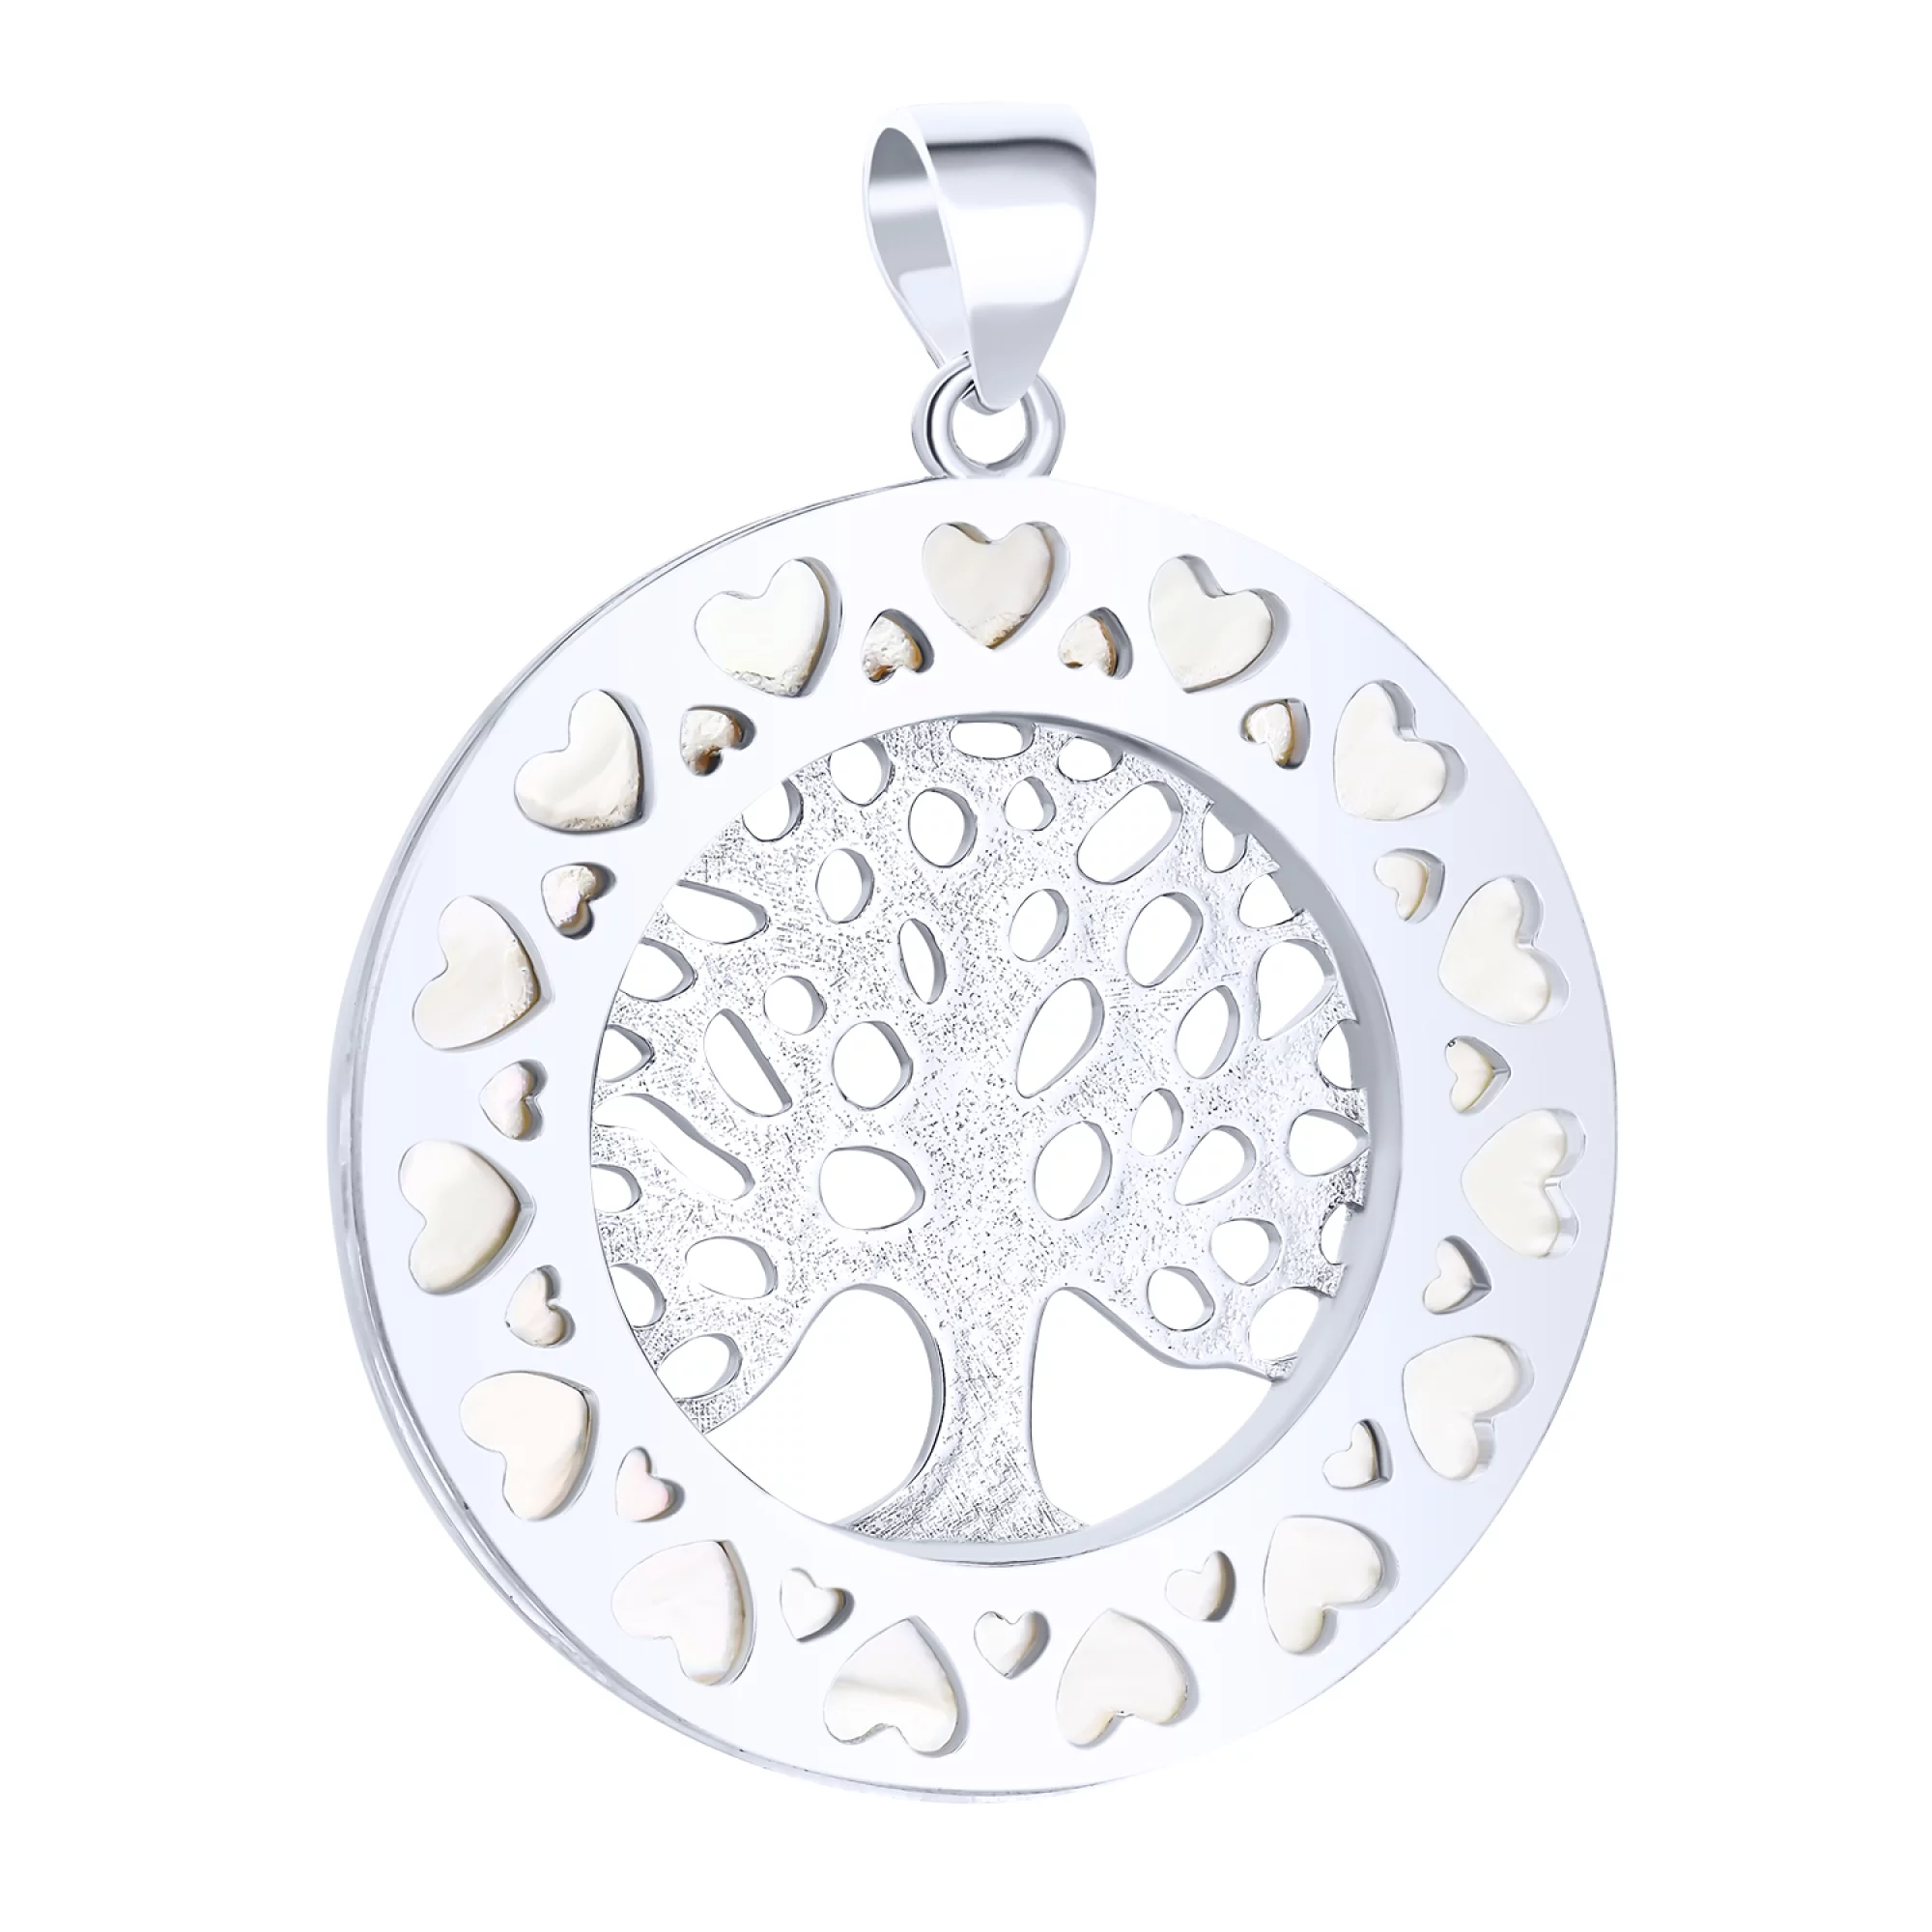 Срібна підвіска з емаллю "Дерево Життя" - 1612543 – зображення 1